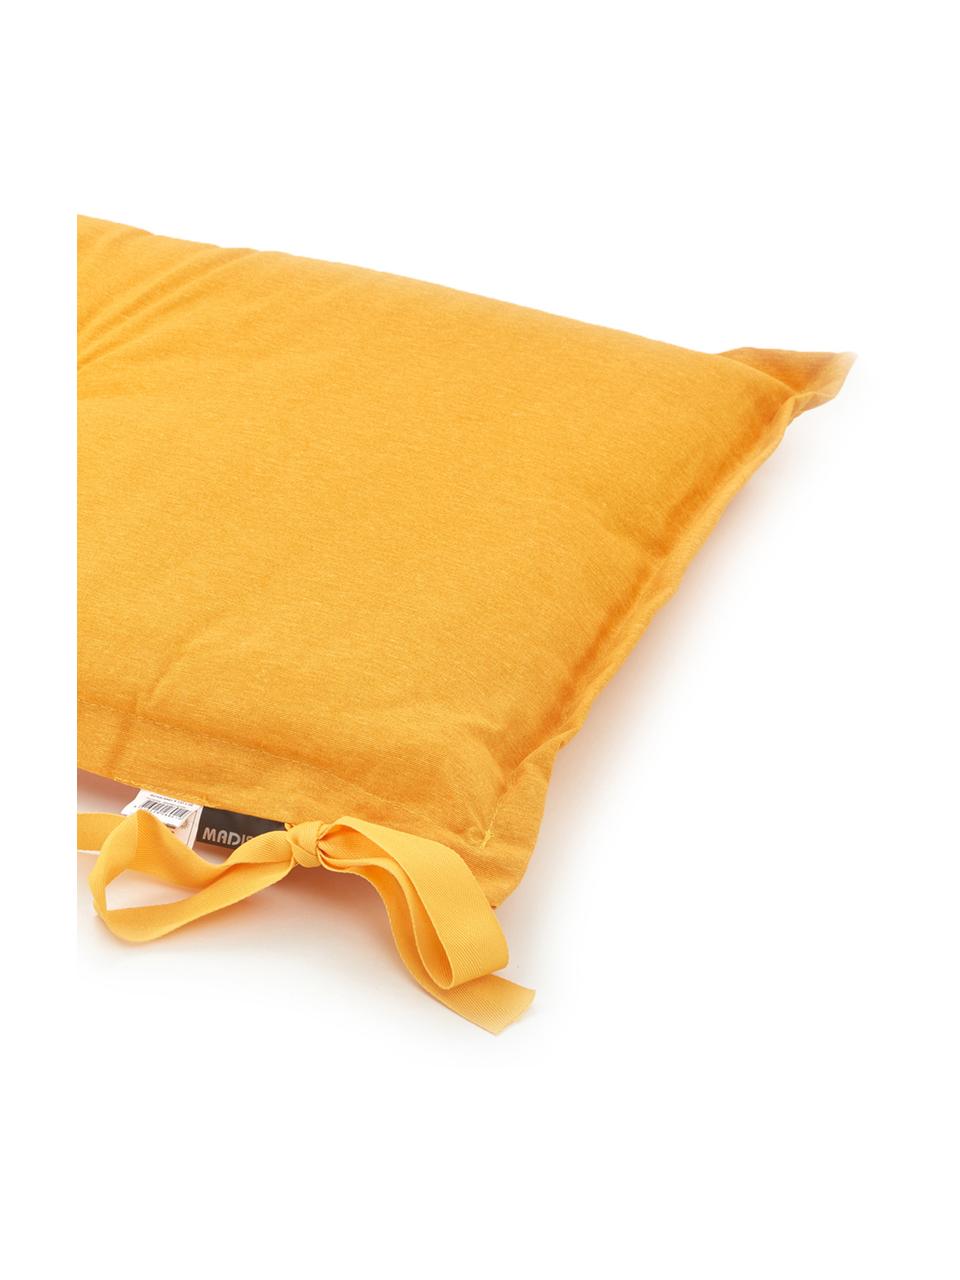 Einfarbige Bankauflage Panama in Gelb, 50% Baumwolle, 45% Polyester,
5% andere Fasern, Gelb, 48 x 120 cm